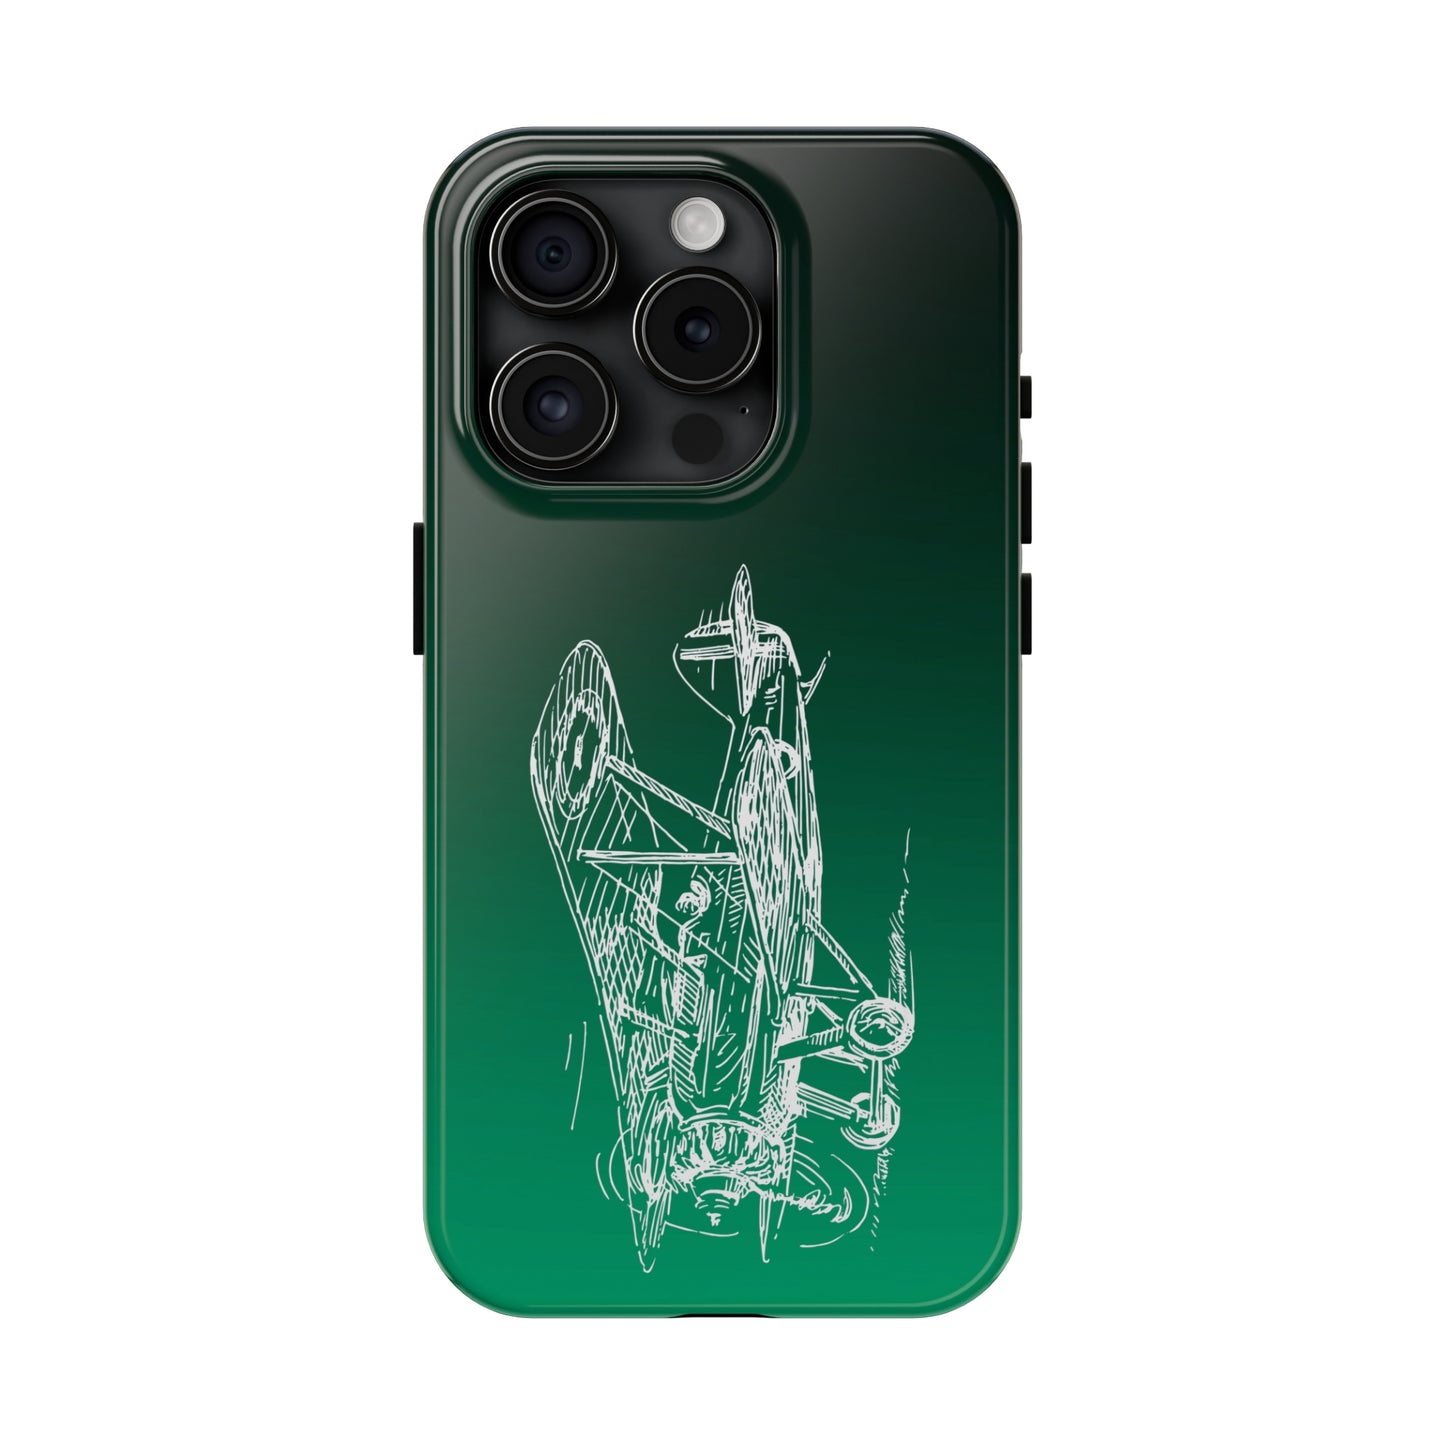 Aero 2 (green) tough phone cases